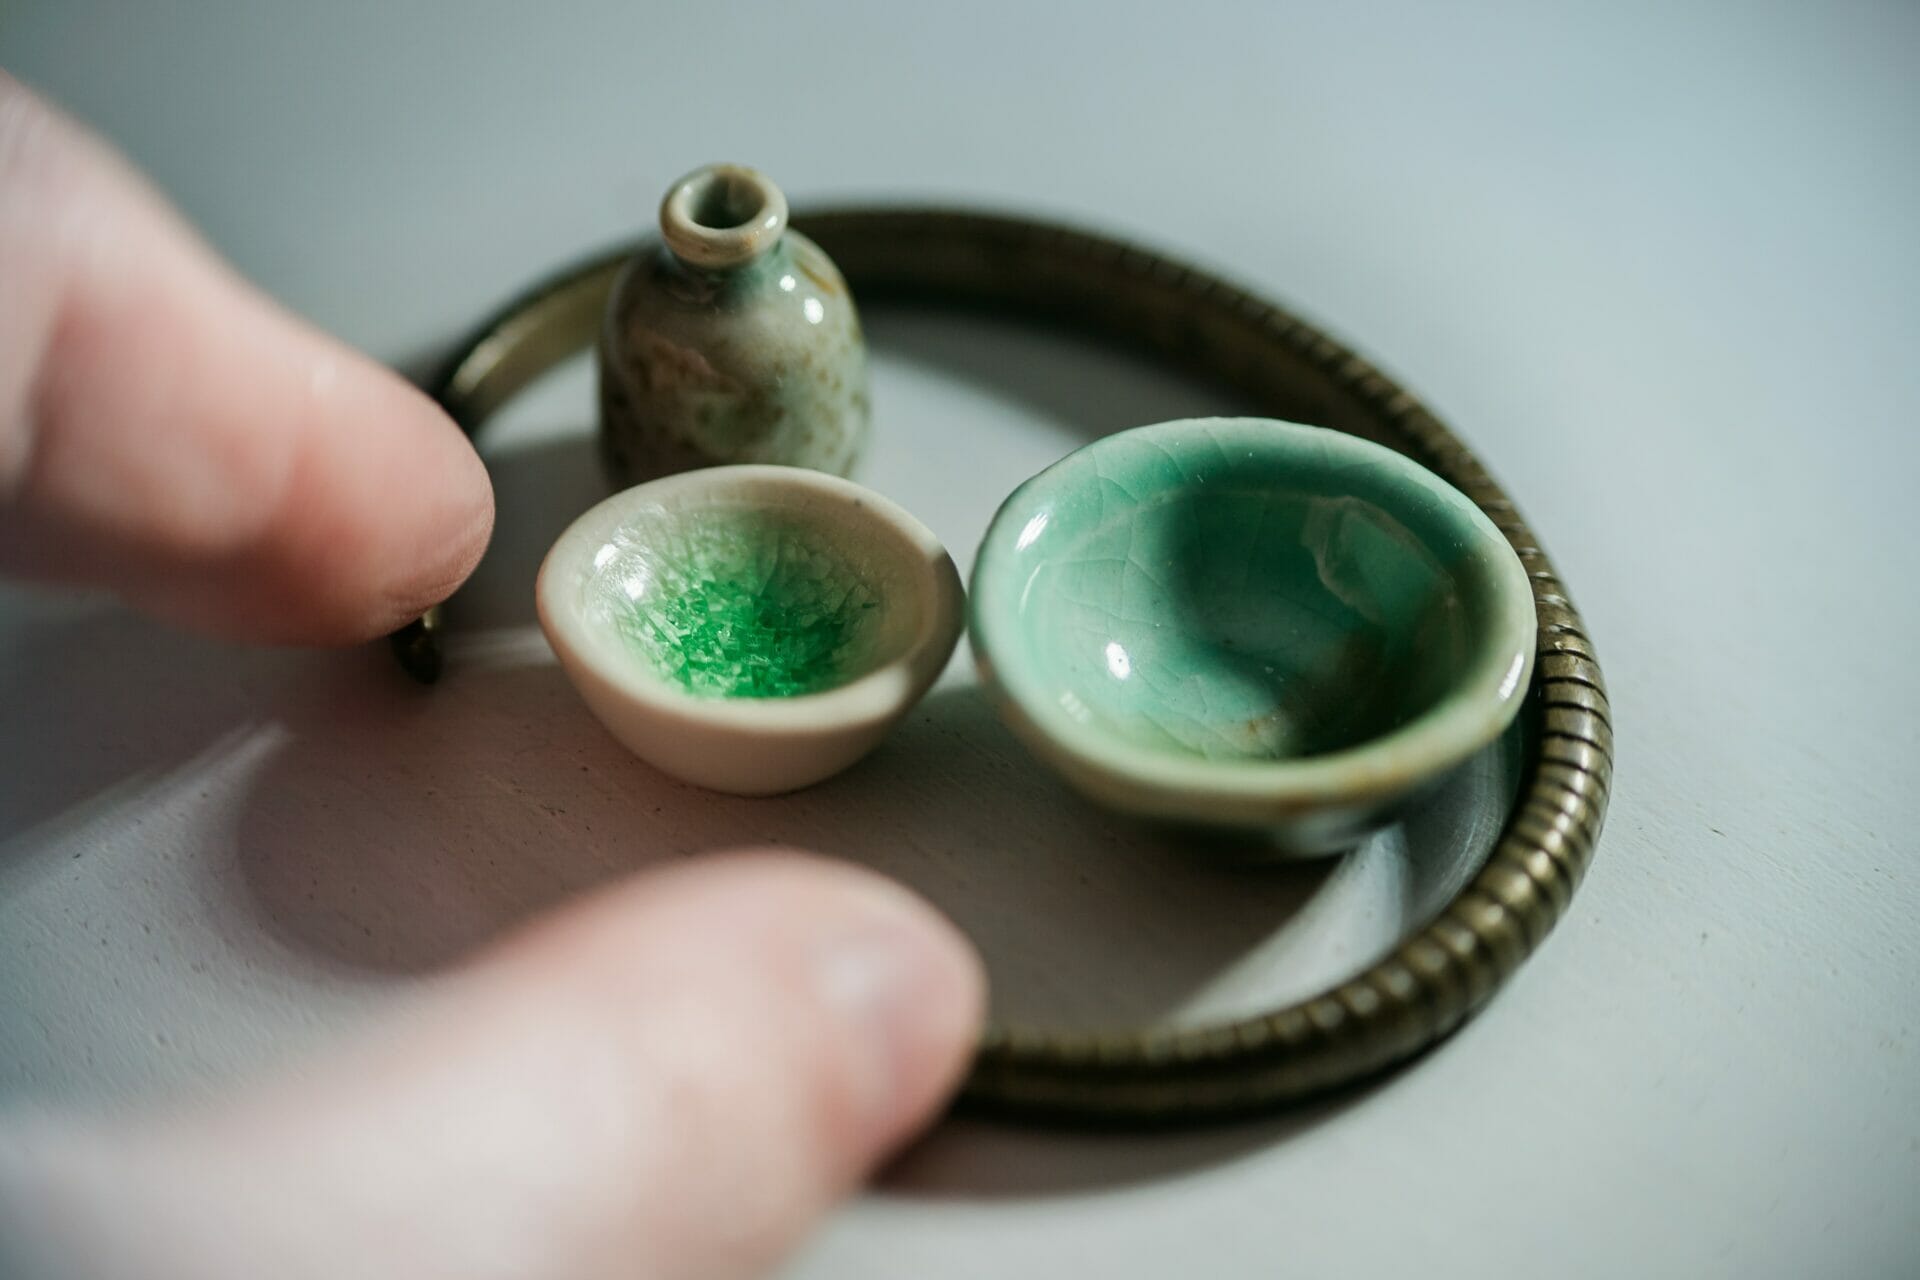 Miniatuur keramisch serviesgoed in cirkel bijeengehouden tussen duim en wijsvinger